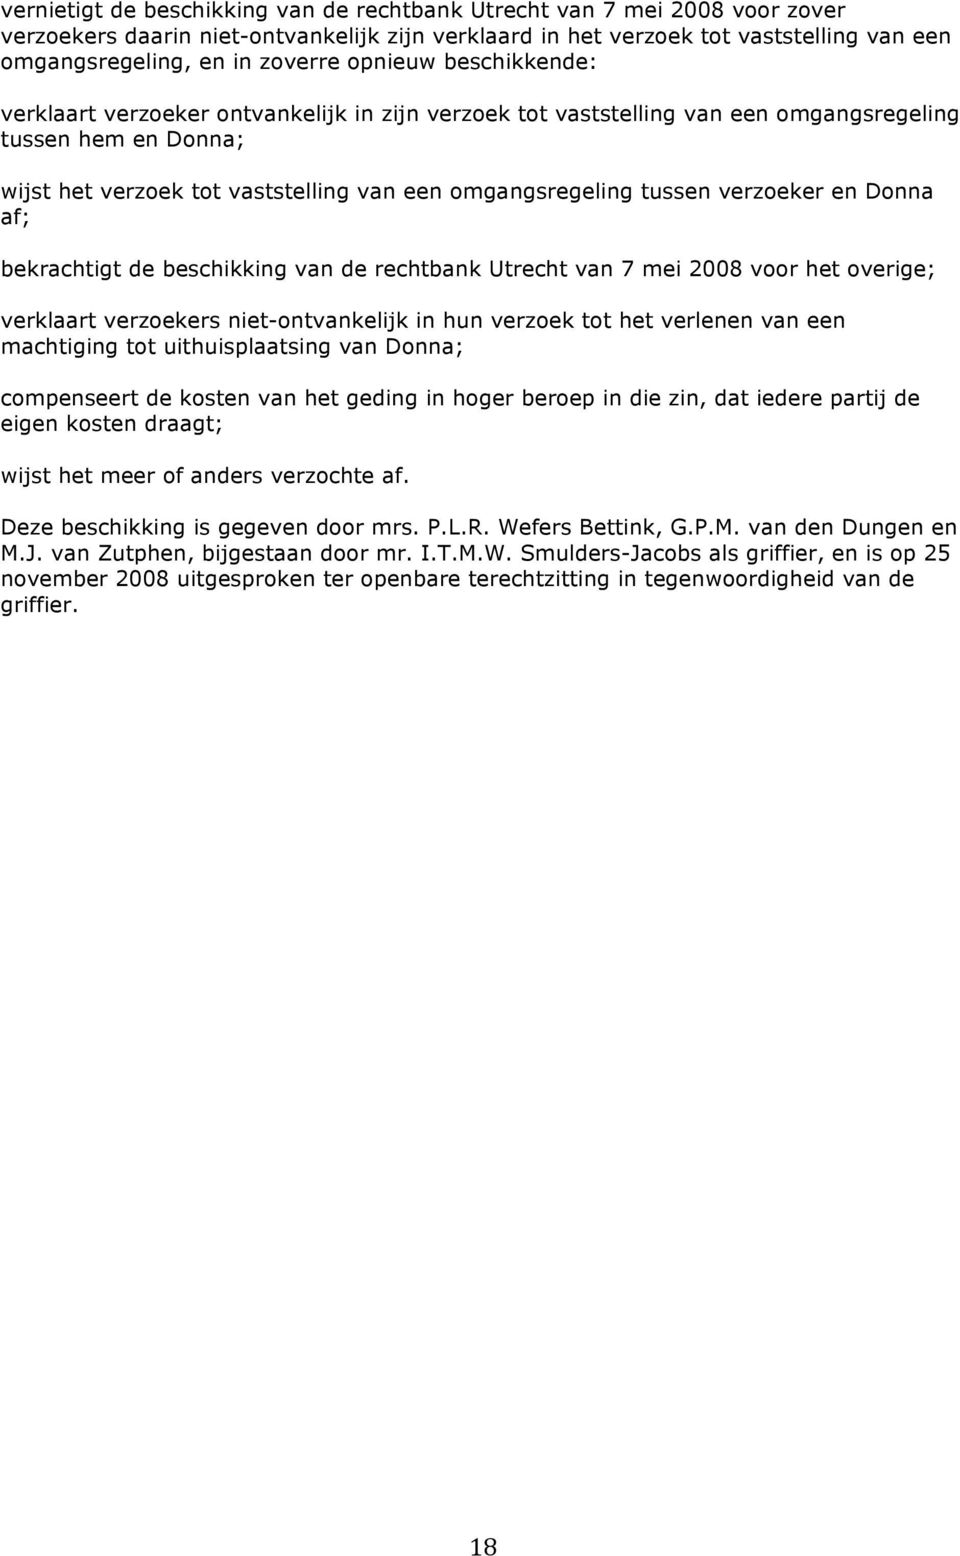 verzoeker en Donna af; bekrachtigt de beschikking van de rechtbank Utrecht van 7 mei 2008 voor het overige; verklaart verzoekers niet-ontvankelijk in hun verzoek tot het verlenen van een machtiging